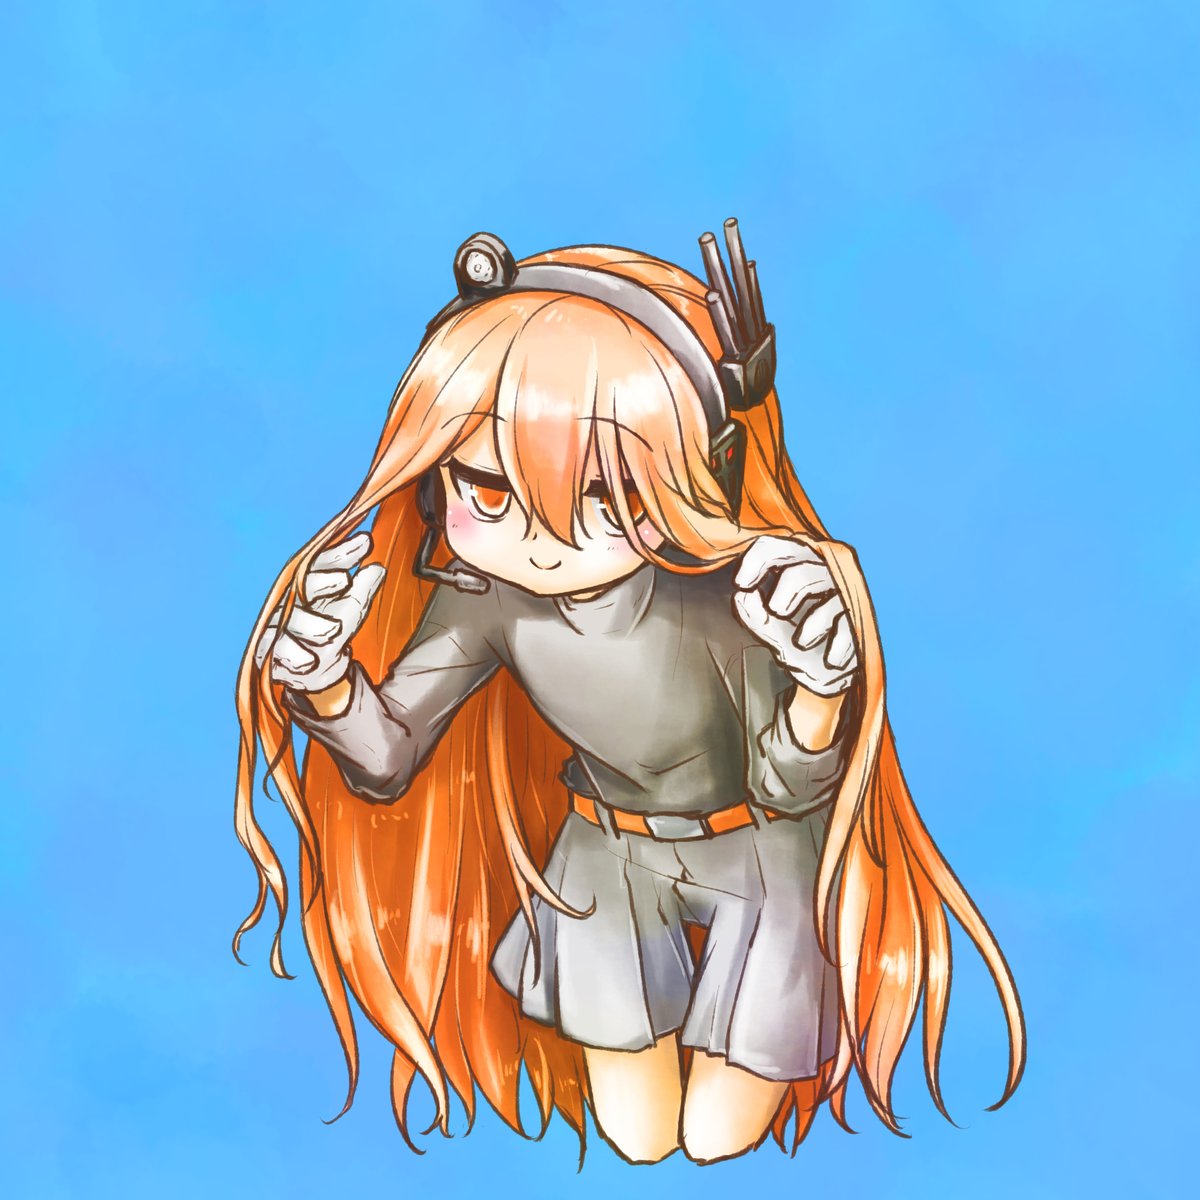 adachi rei 1girl solo long hair gloves orange hair smile white gloves  illustration images